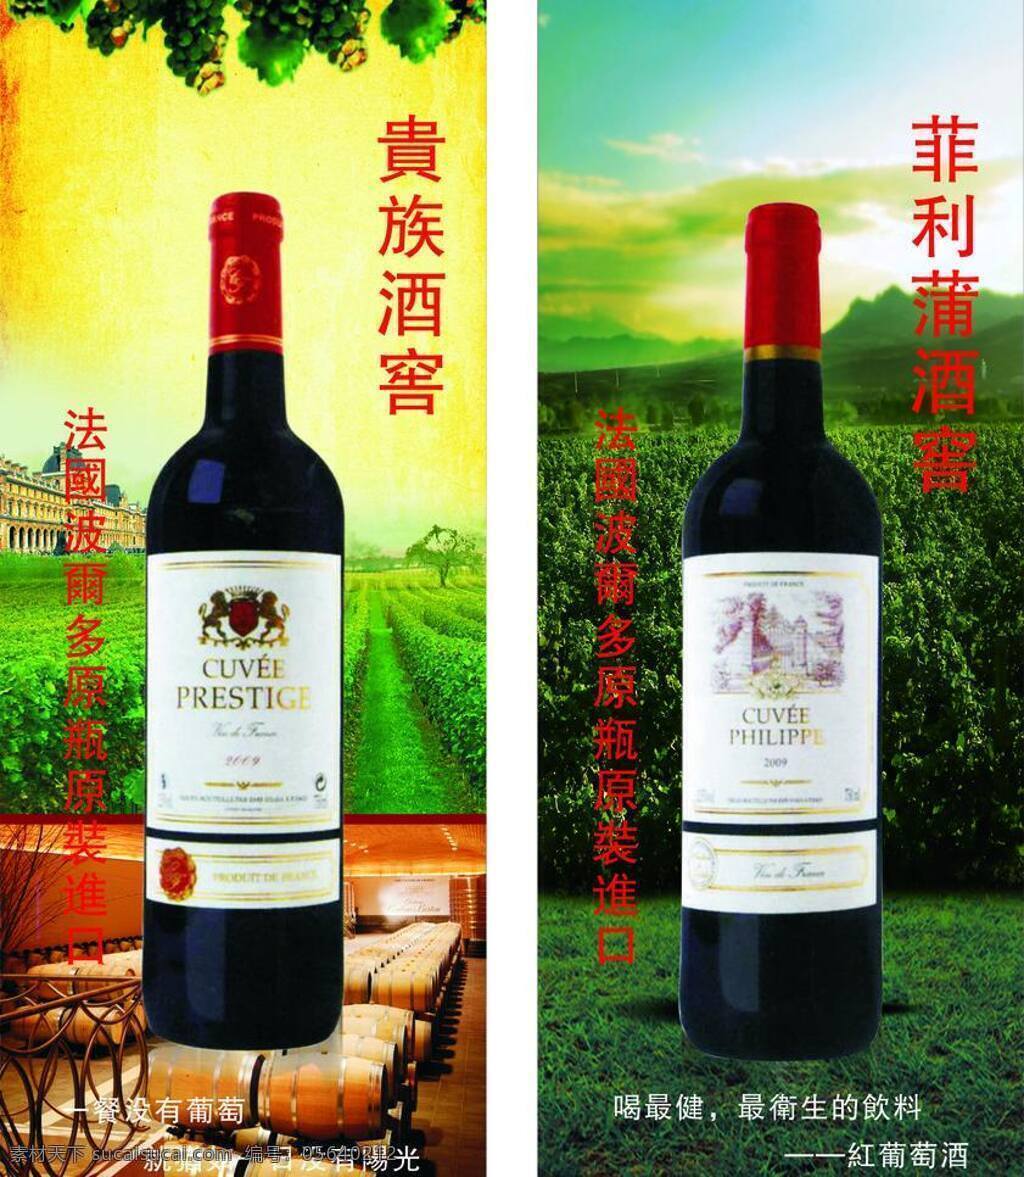 红酒 红酒海报 名酒 葡萄酒 展架 矢量 模板下载 易拉宝 进口酒 其他海报设计